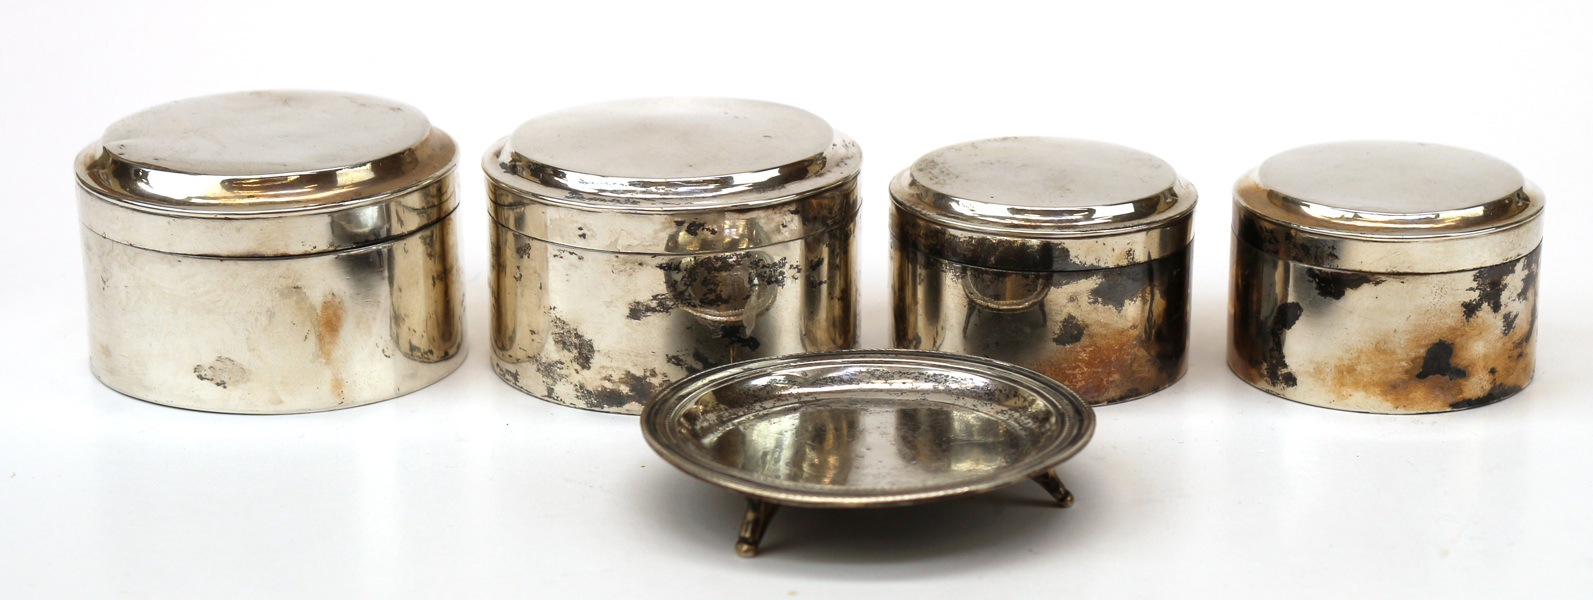 Toilettedosor 2 par samt nipperfat, silver, empire, 1800-talets 1 hälft, slät modell,_10122a_lg.jpeg